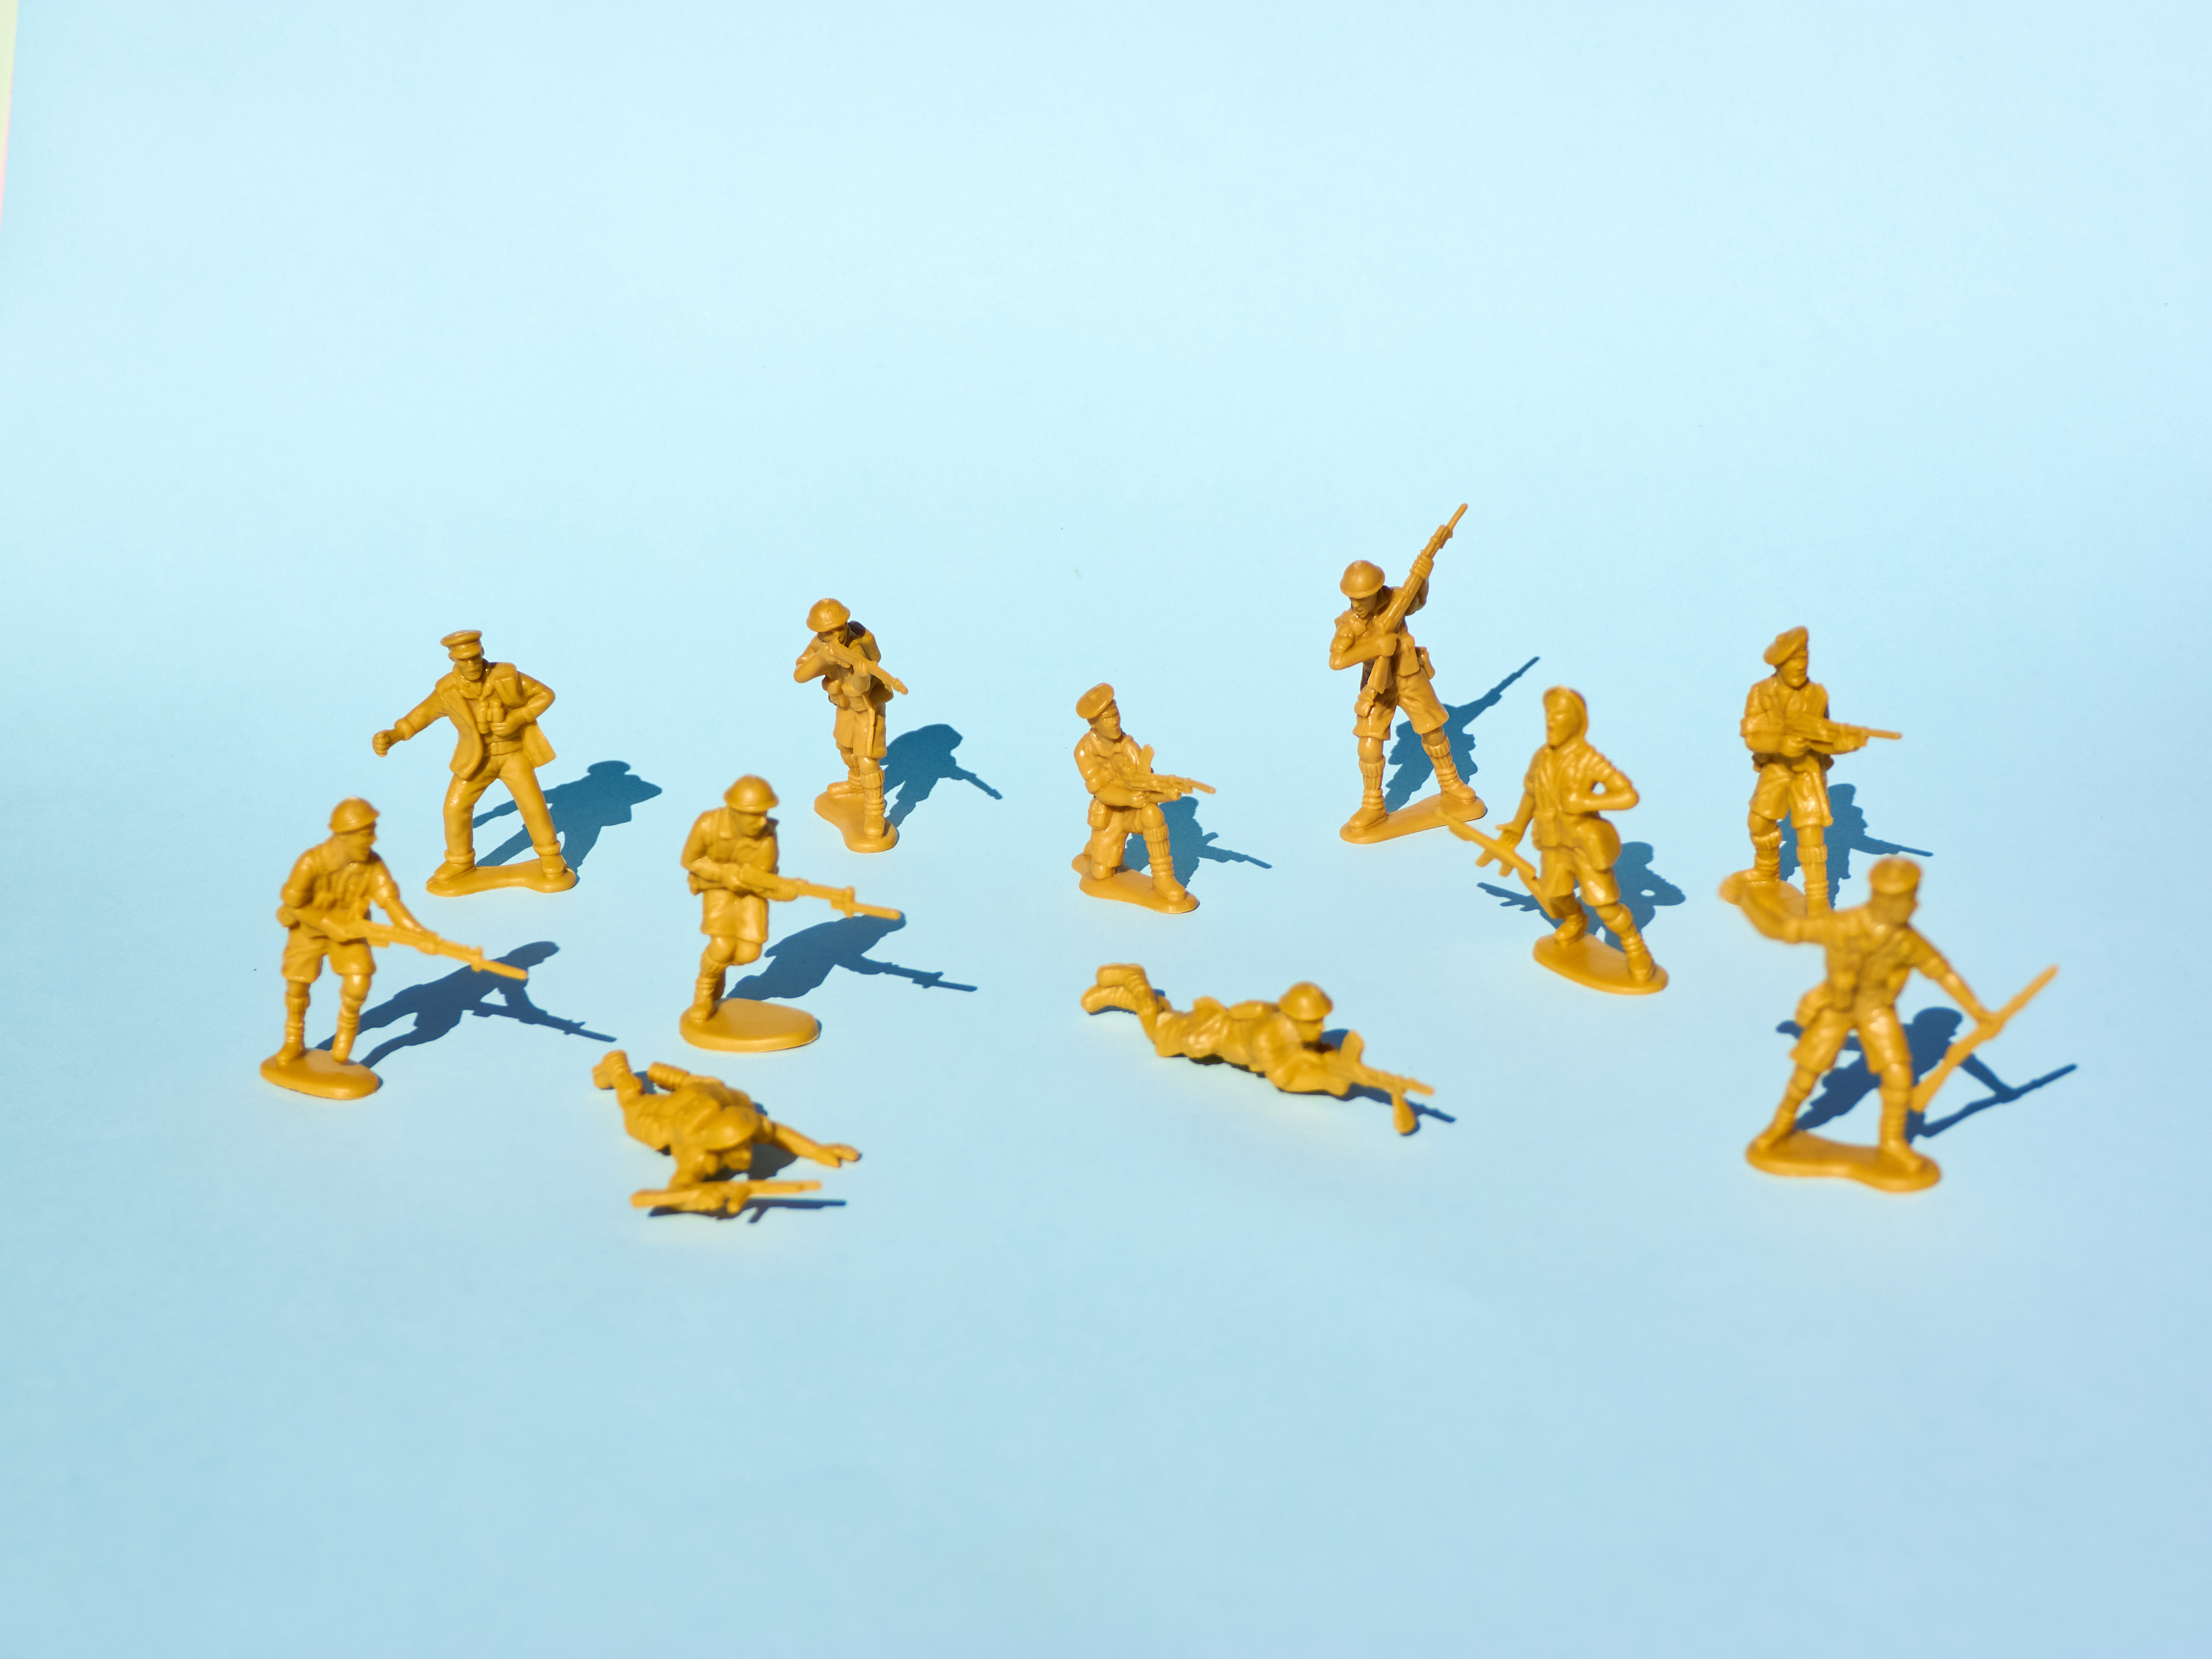 नीले रंग की पृष्ठभूमि पर पीले प्लास्टिक के खिलौने वाले सैनिकों के एक समूह की तस्वीर जो एक दूसरे पर बंदूक तान रहे हैं।